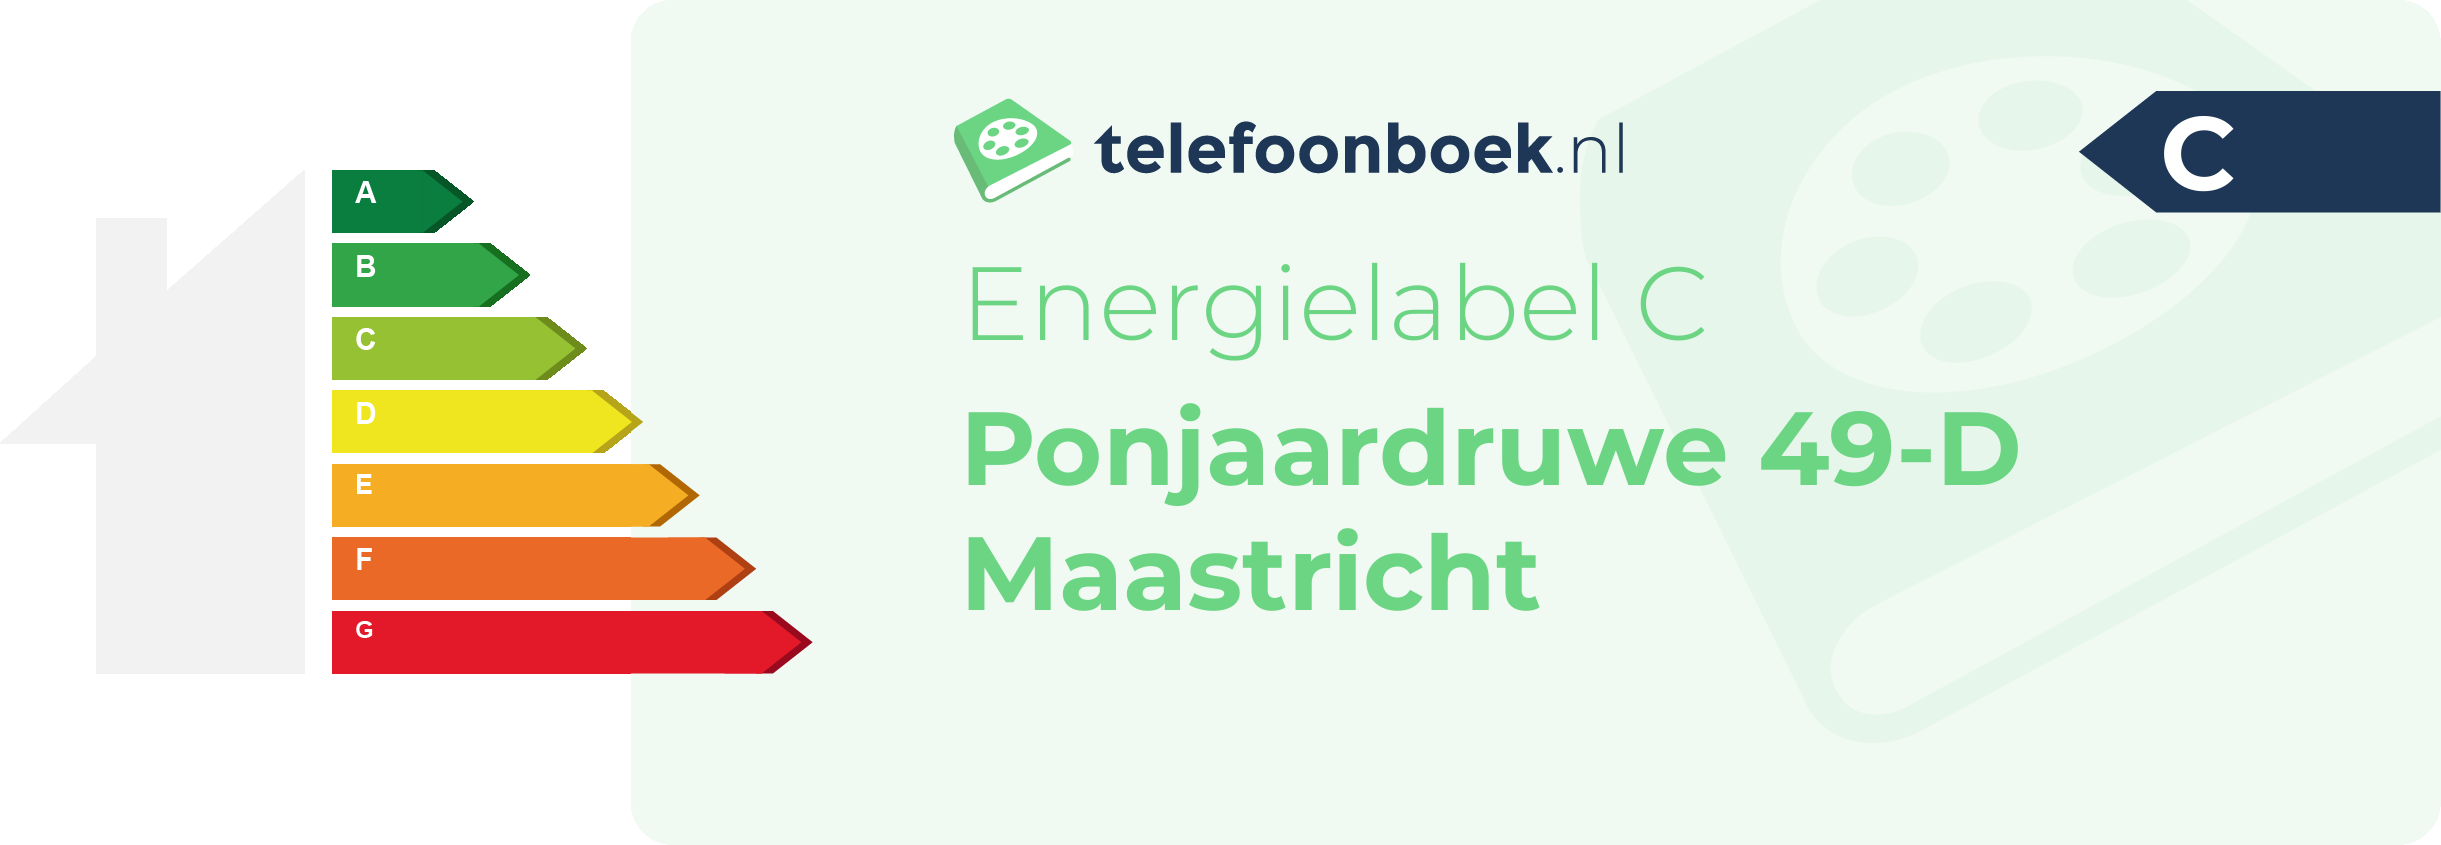 Energielabel Ponjaardruwe 49-D Maastricht